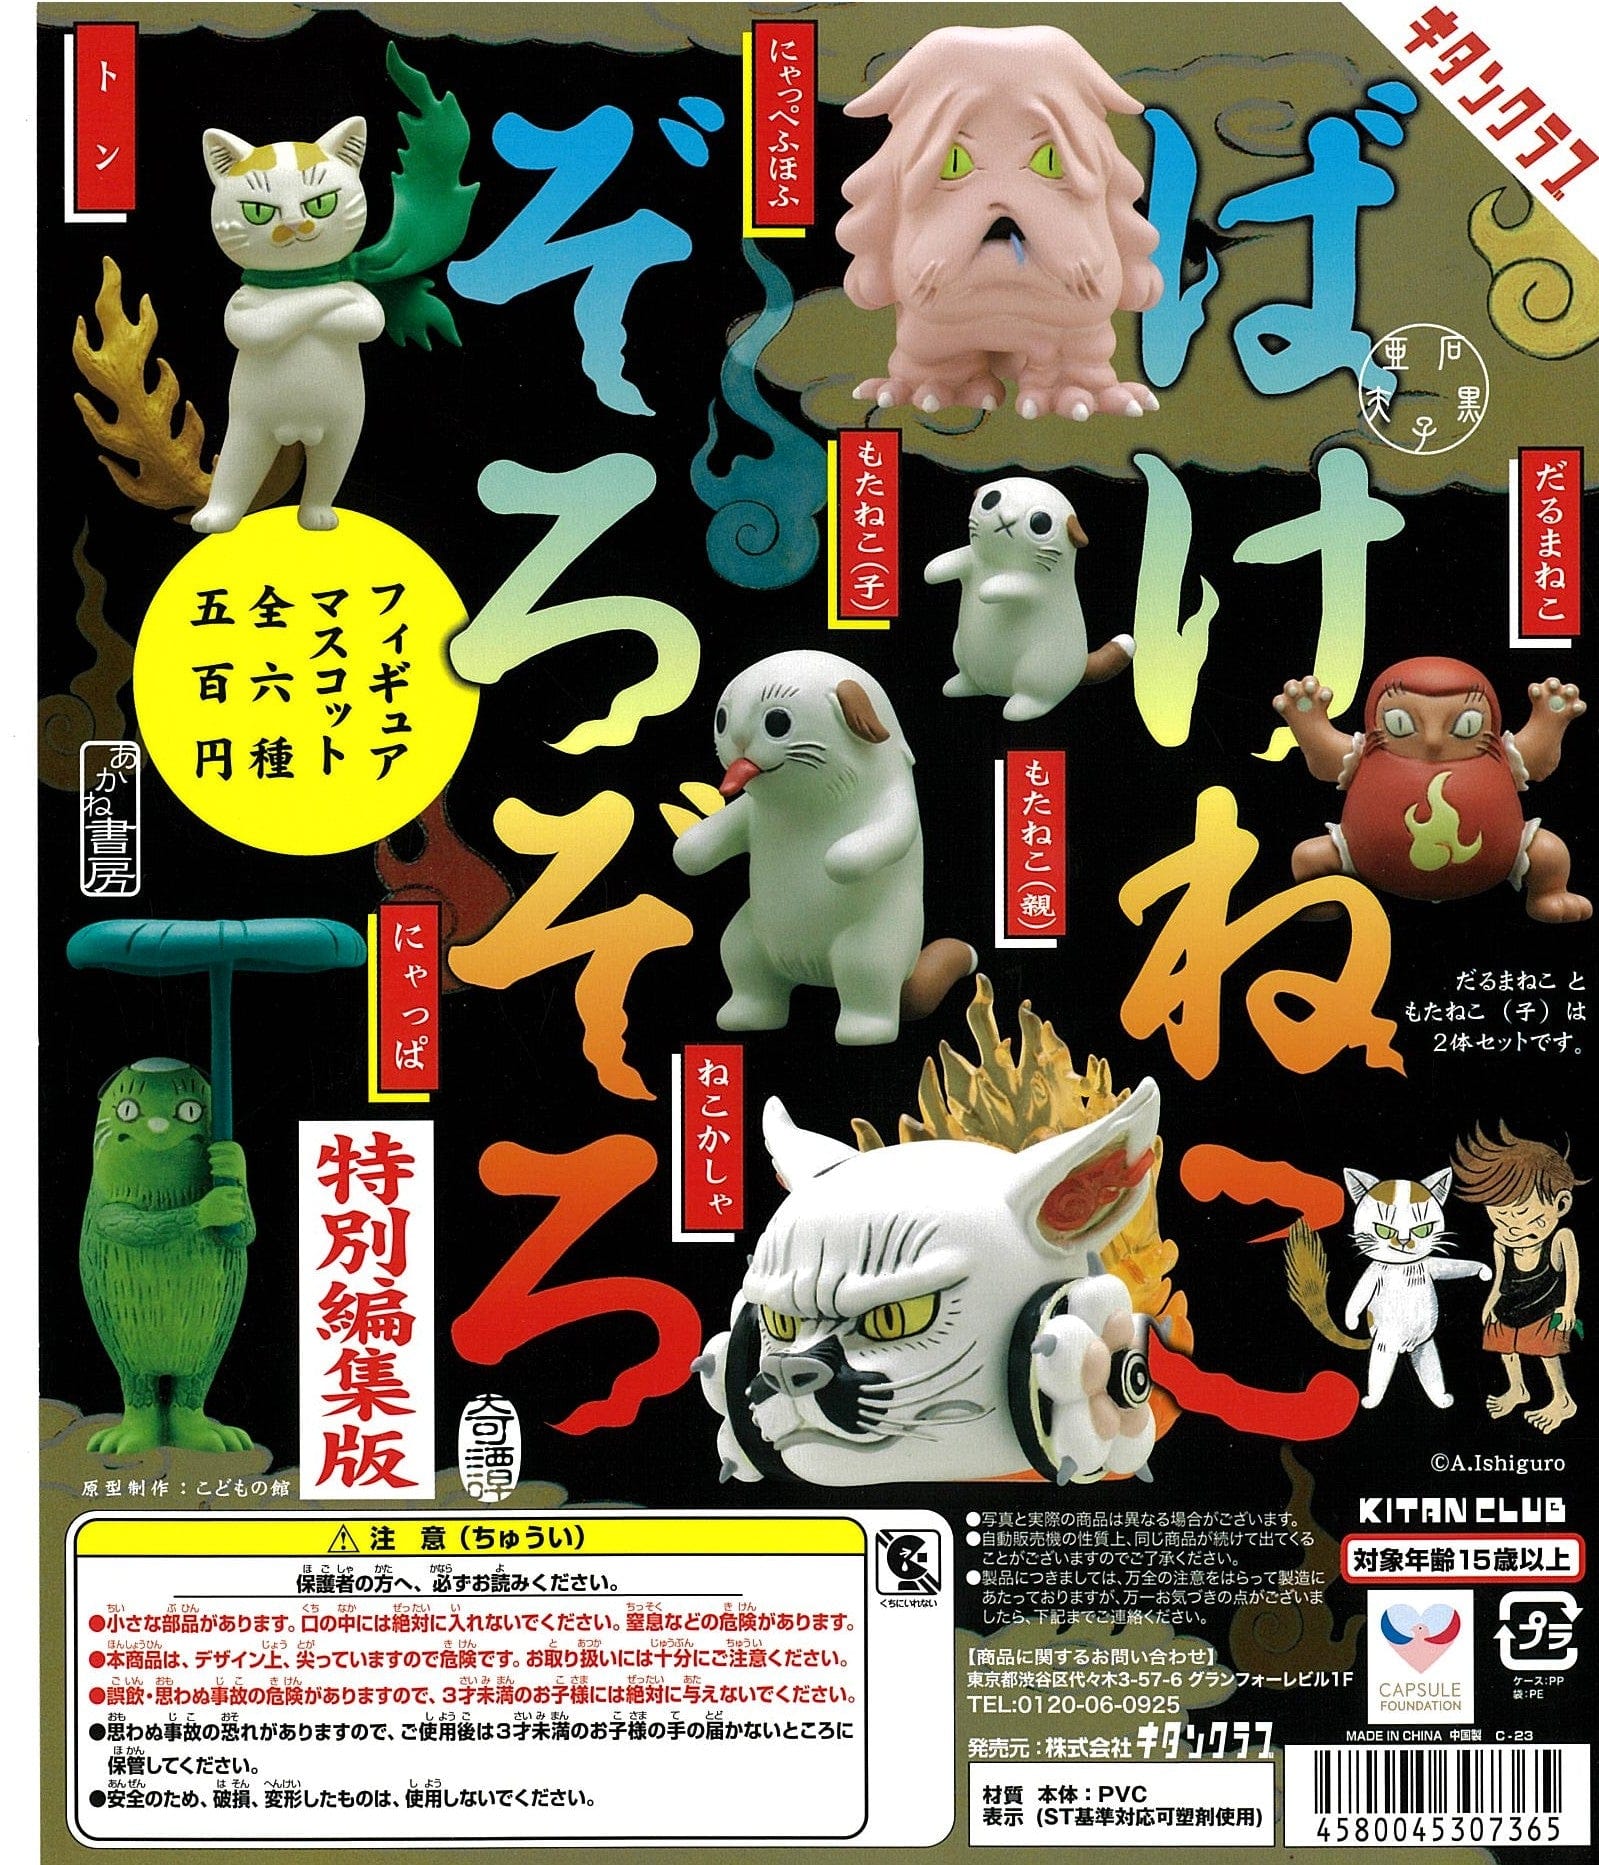 Kitan Club CP2277 Bakeneko Zorozoro Figure Mascot Special Edition